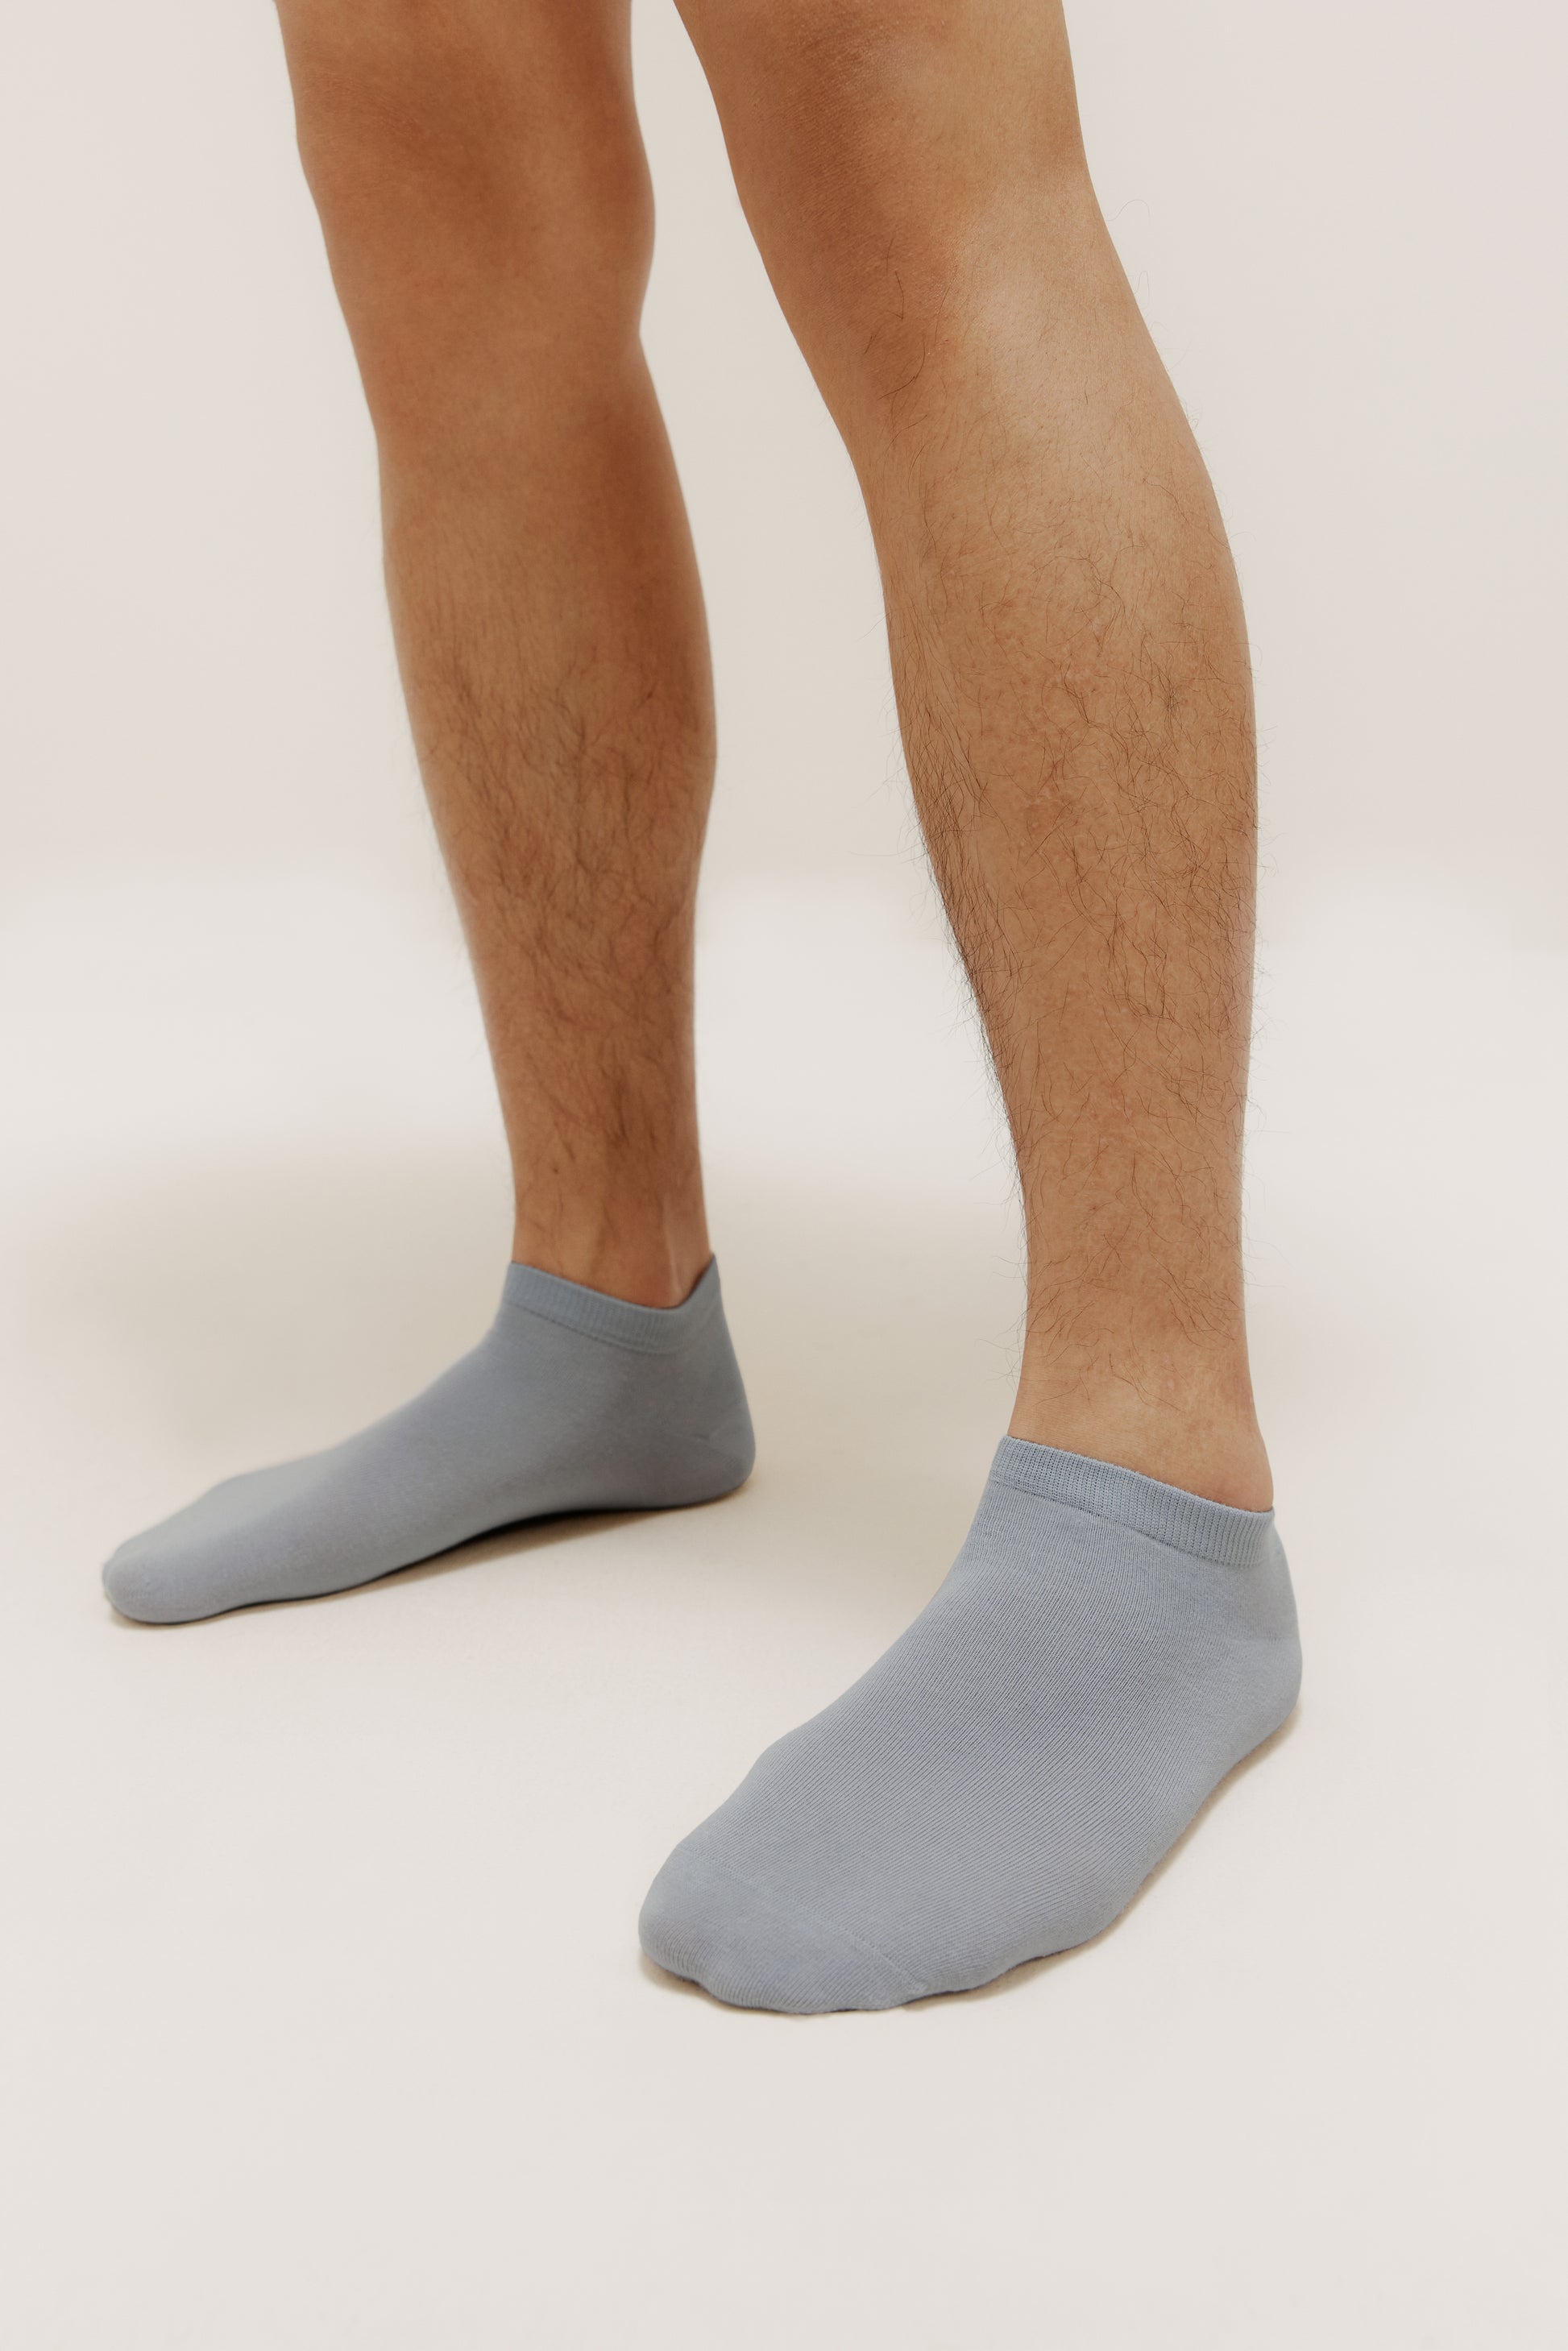 Tigeen 72 Pairs Quarter Ankle Sock Sport Ankle Socks Bulk Adult Unisex  Cotton Sock Casual Quarter Socks for Men Women (Black) at  Men's  Clothing store